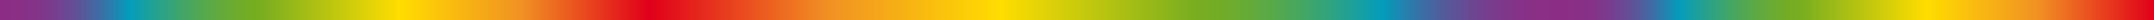 AECdisc – Die Potenzialanalyse für Einzelpersonen und Teams - zur Persönlichkeits- und Teamentwicklung - Akademischer Mentalcoach Michael Deutschmann, MSc - Zertifizierter AECdisc Potenzialberater - Businesstraining . Vision Unternehmensberatung Michael Deutschmann, MSc – Sautens Ötztal Imst Tirol – Persönlichkeits-, Team- & Organisationsentwicklung – Consulting – Change Management Veränderungsmanagement Veränderungsprozesse Unternehmenskultur Konfliktmanagement – Führungskräftecoaching Teamcoaching Moderation – Teambuilding Teamentwicklung – Führungskräftetraining Businesstraining Teamtraining Gruppendynamik – Businesscoaching Teamcoaching – Führungskräftetrainer Businesstrainer Teamtrainer – Führungskräftecoach Businesscoach Teamcoach